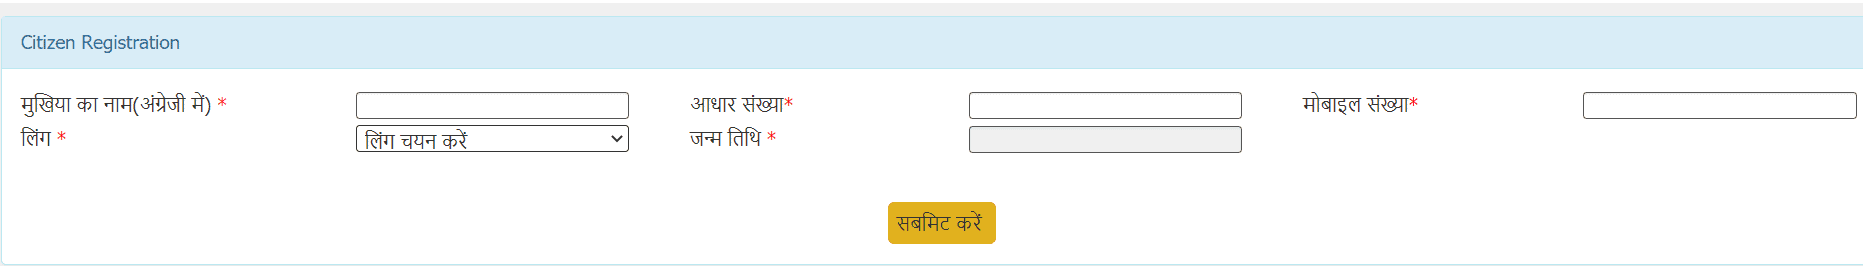 jan aadhar registration